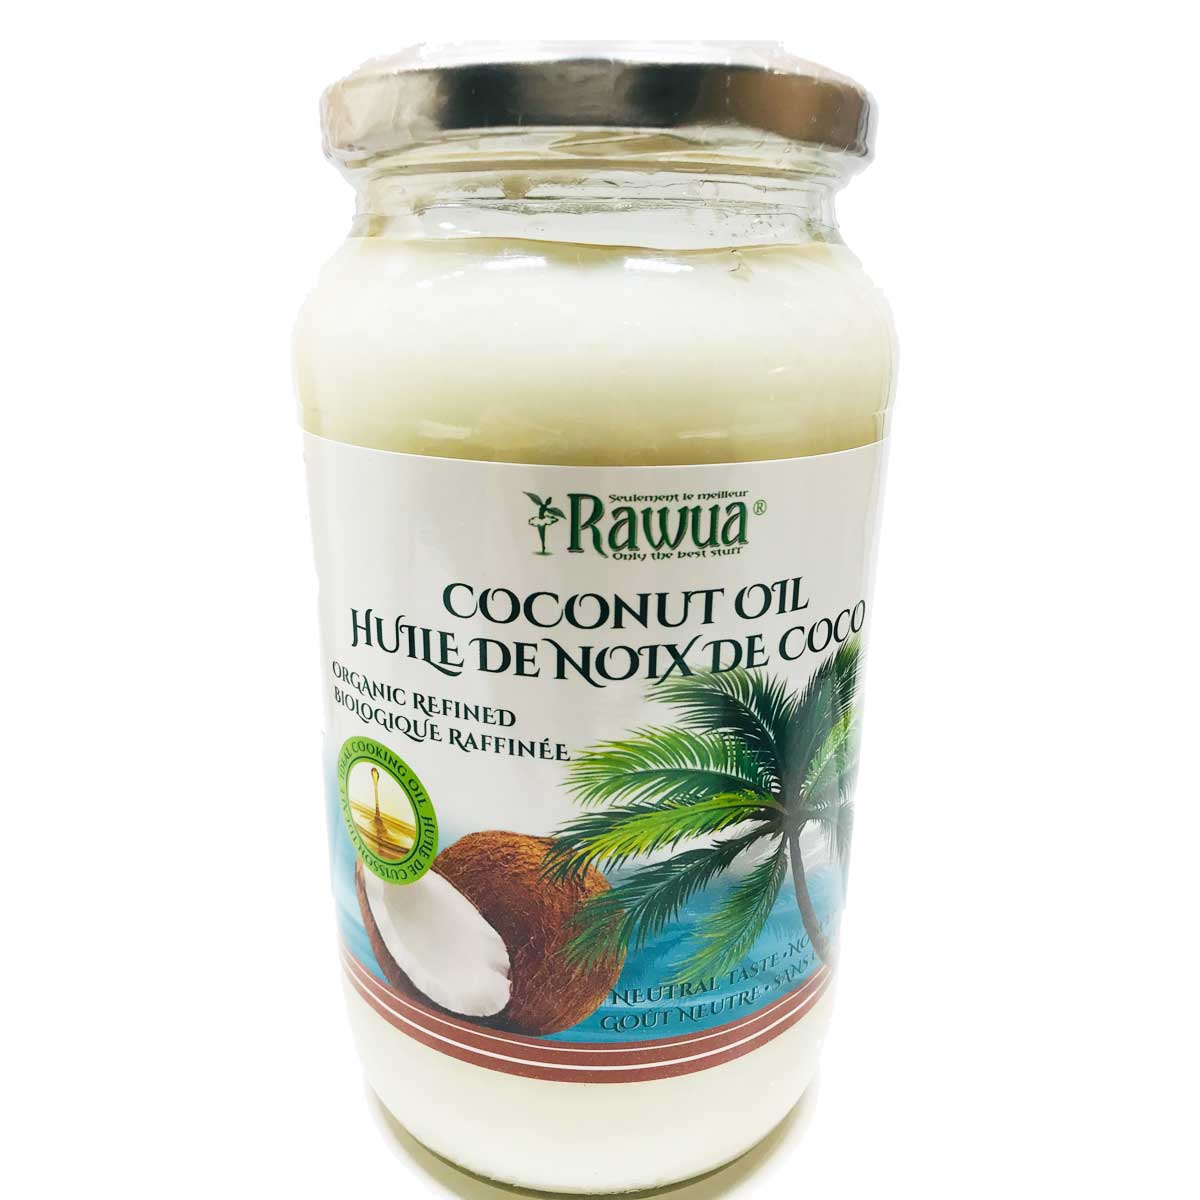 Huile de noix de coco biologique raffiné - goût neutre sans odeur - Rawua